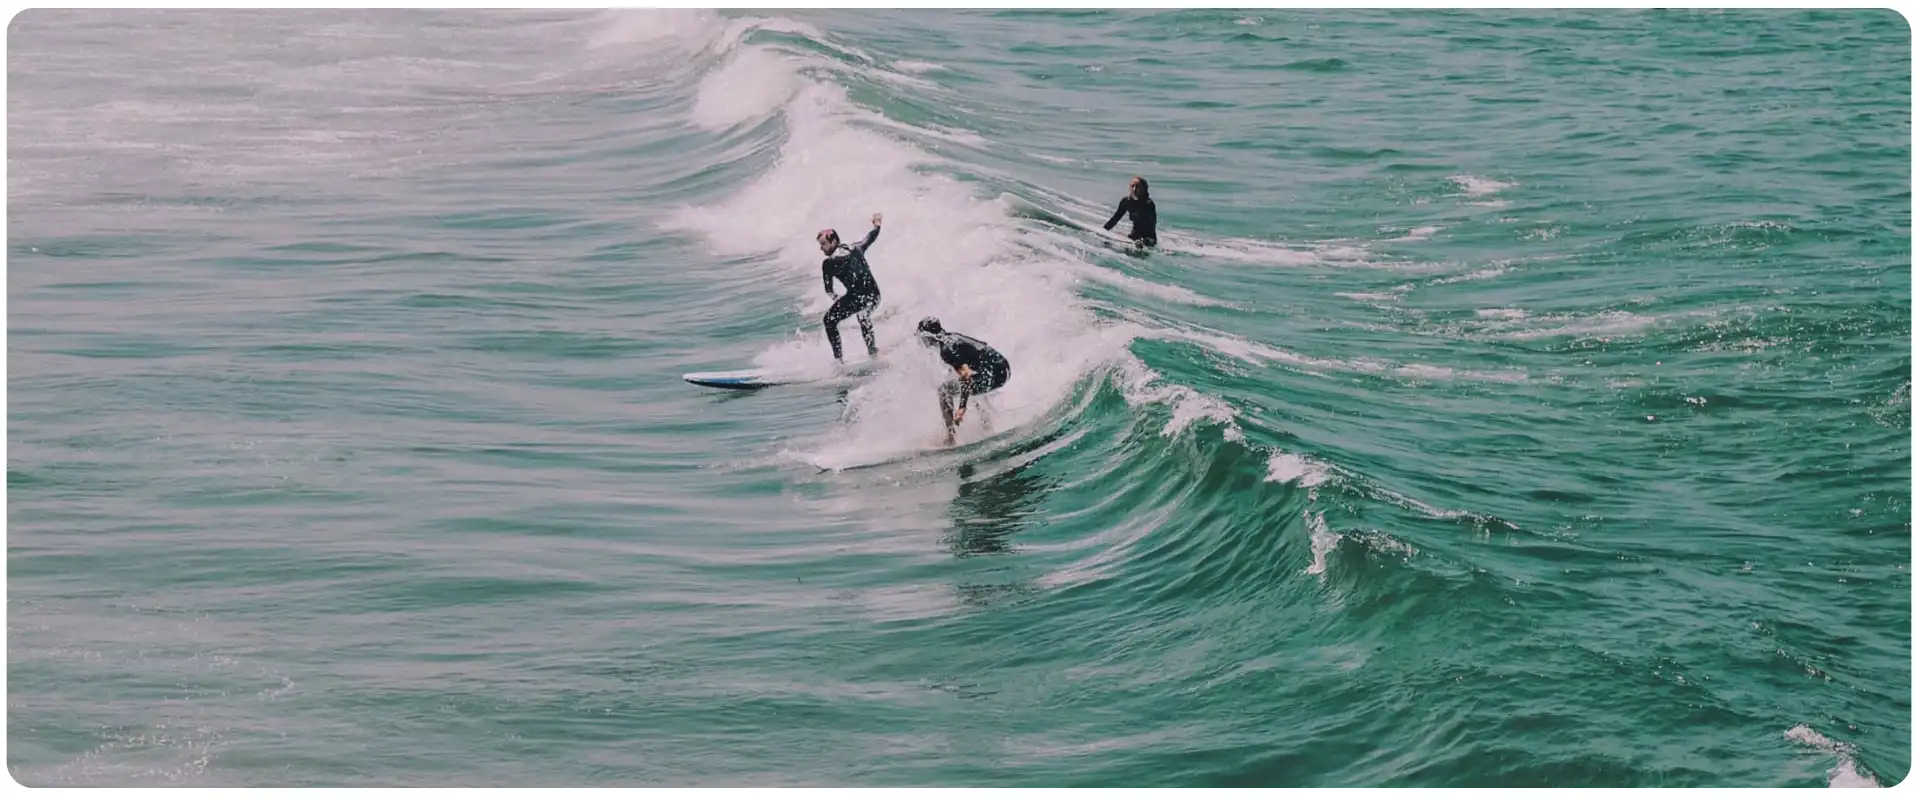 Charterrejser til Portugal surfer.webp